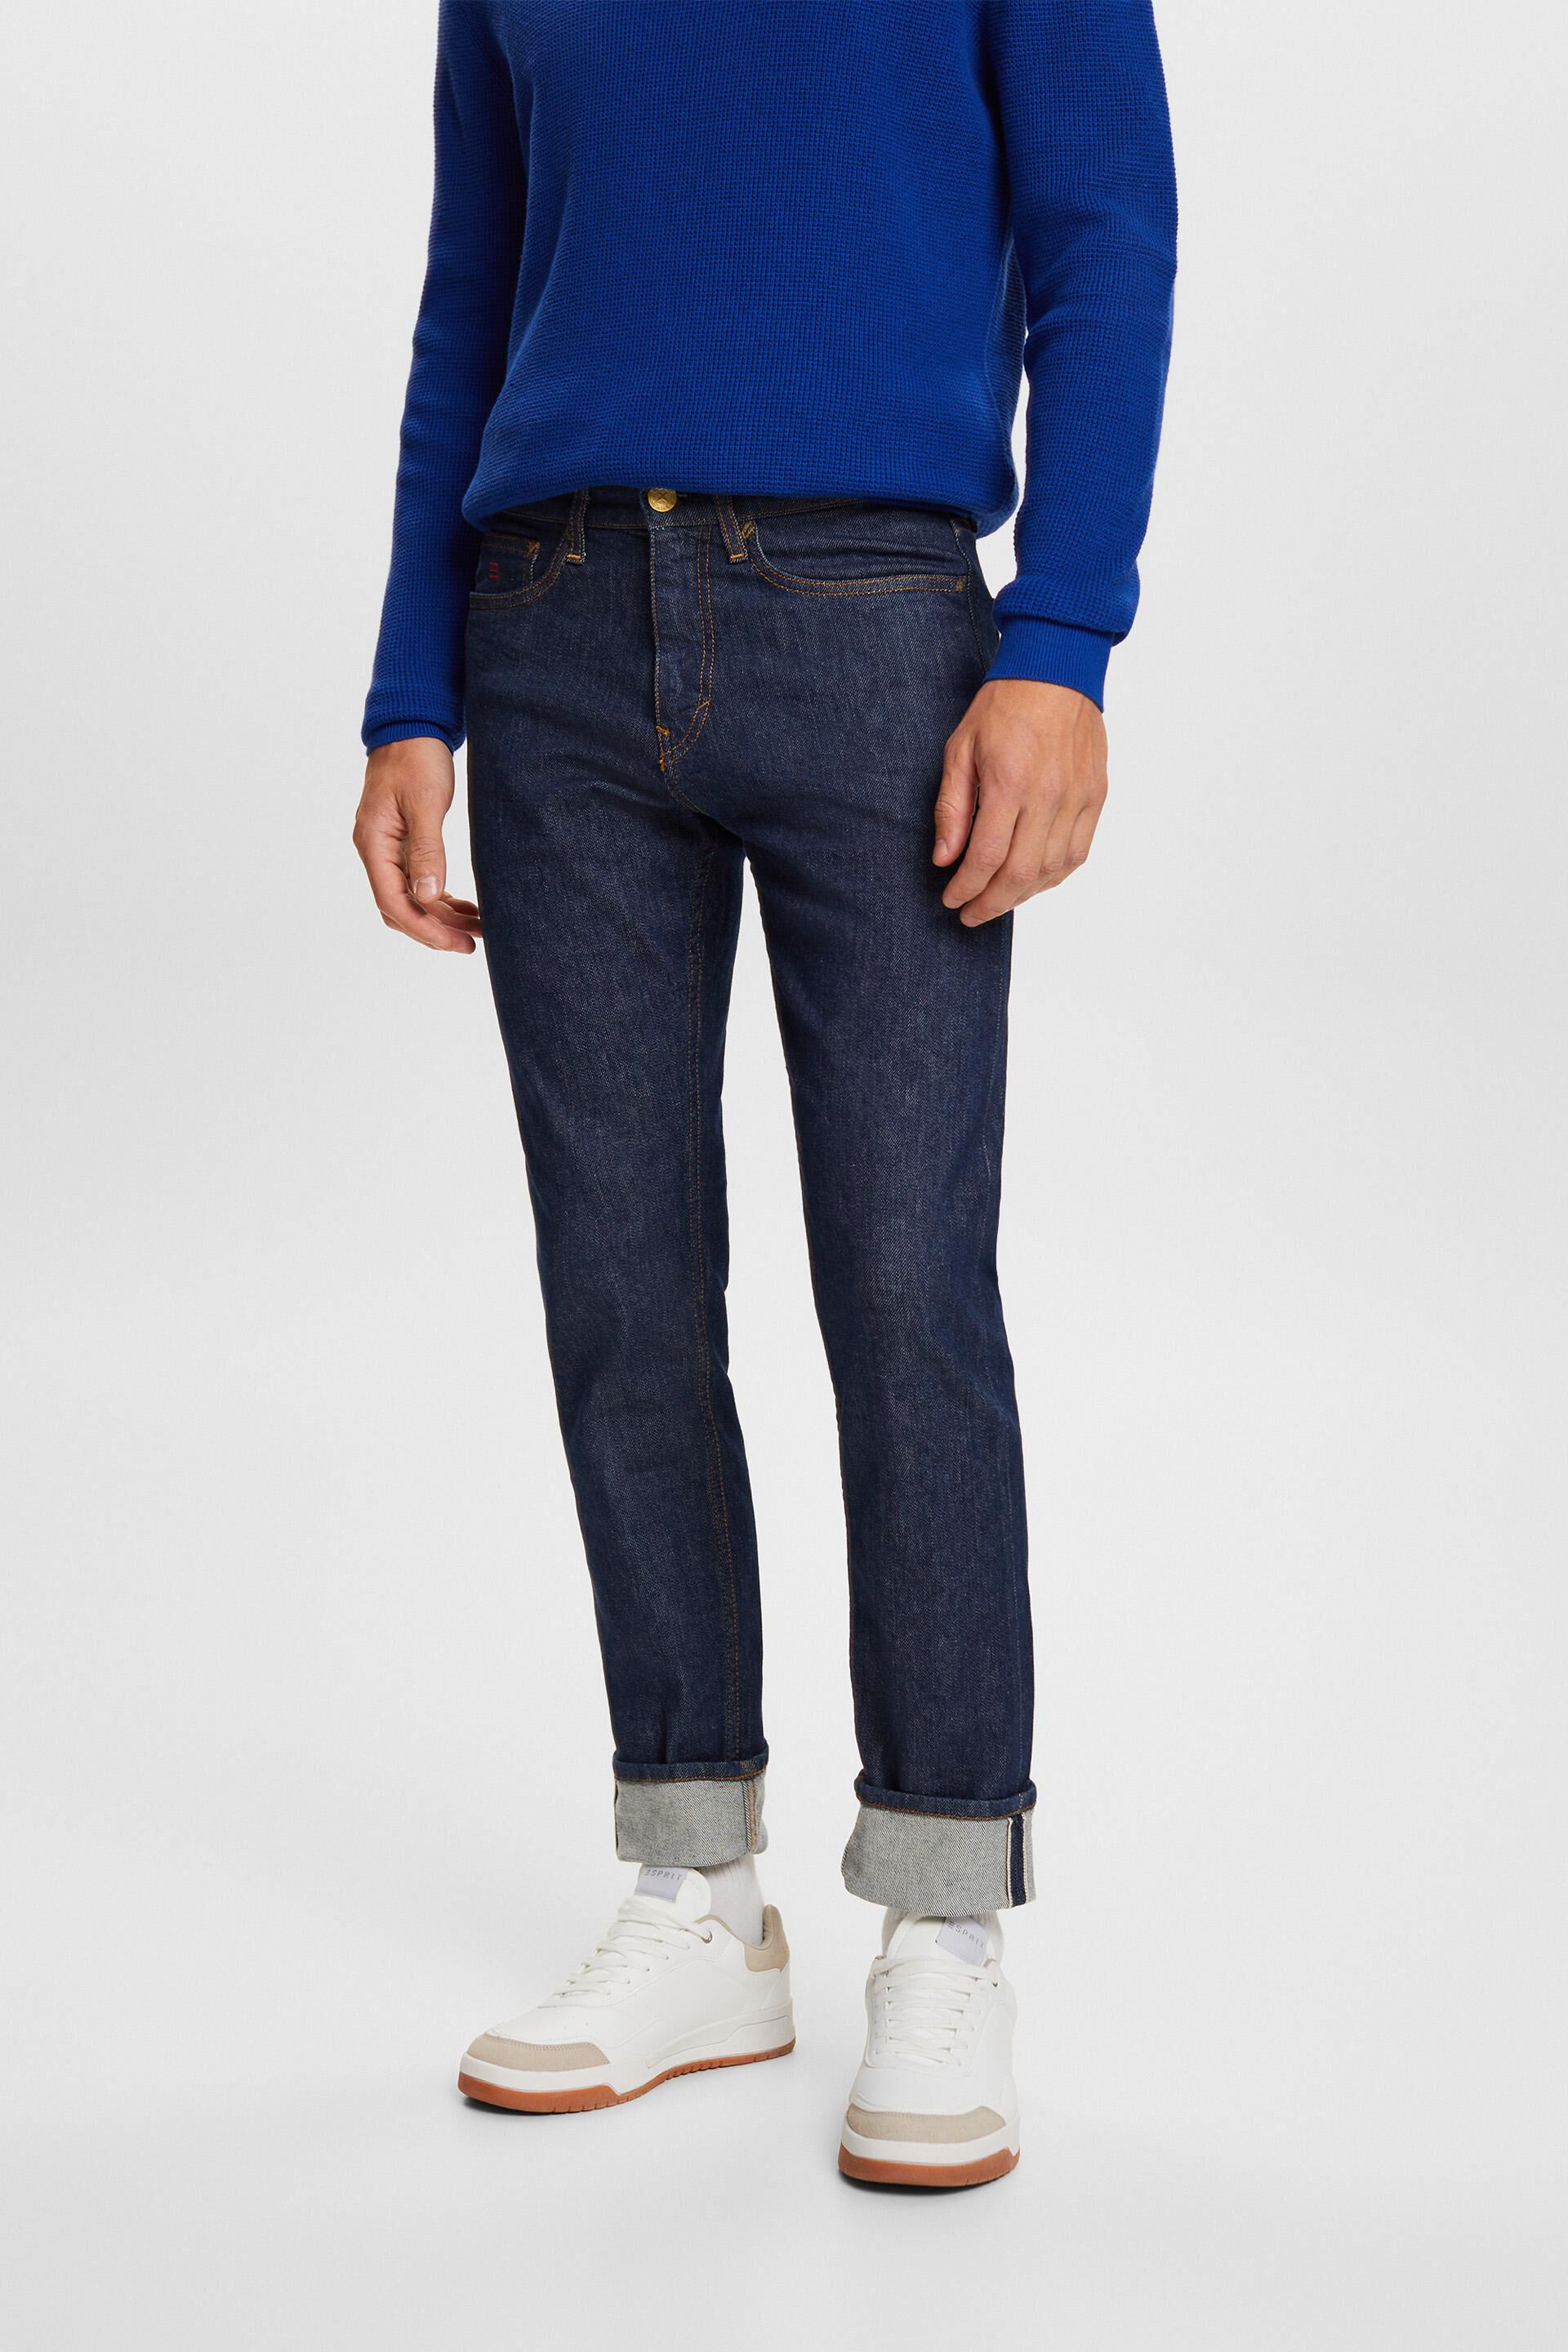 Esprit fit with slim Premium jeans selvedge